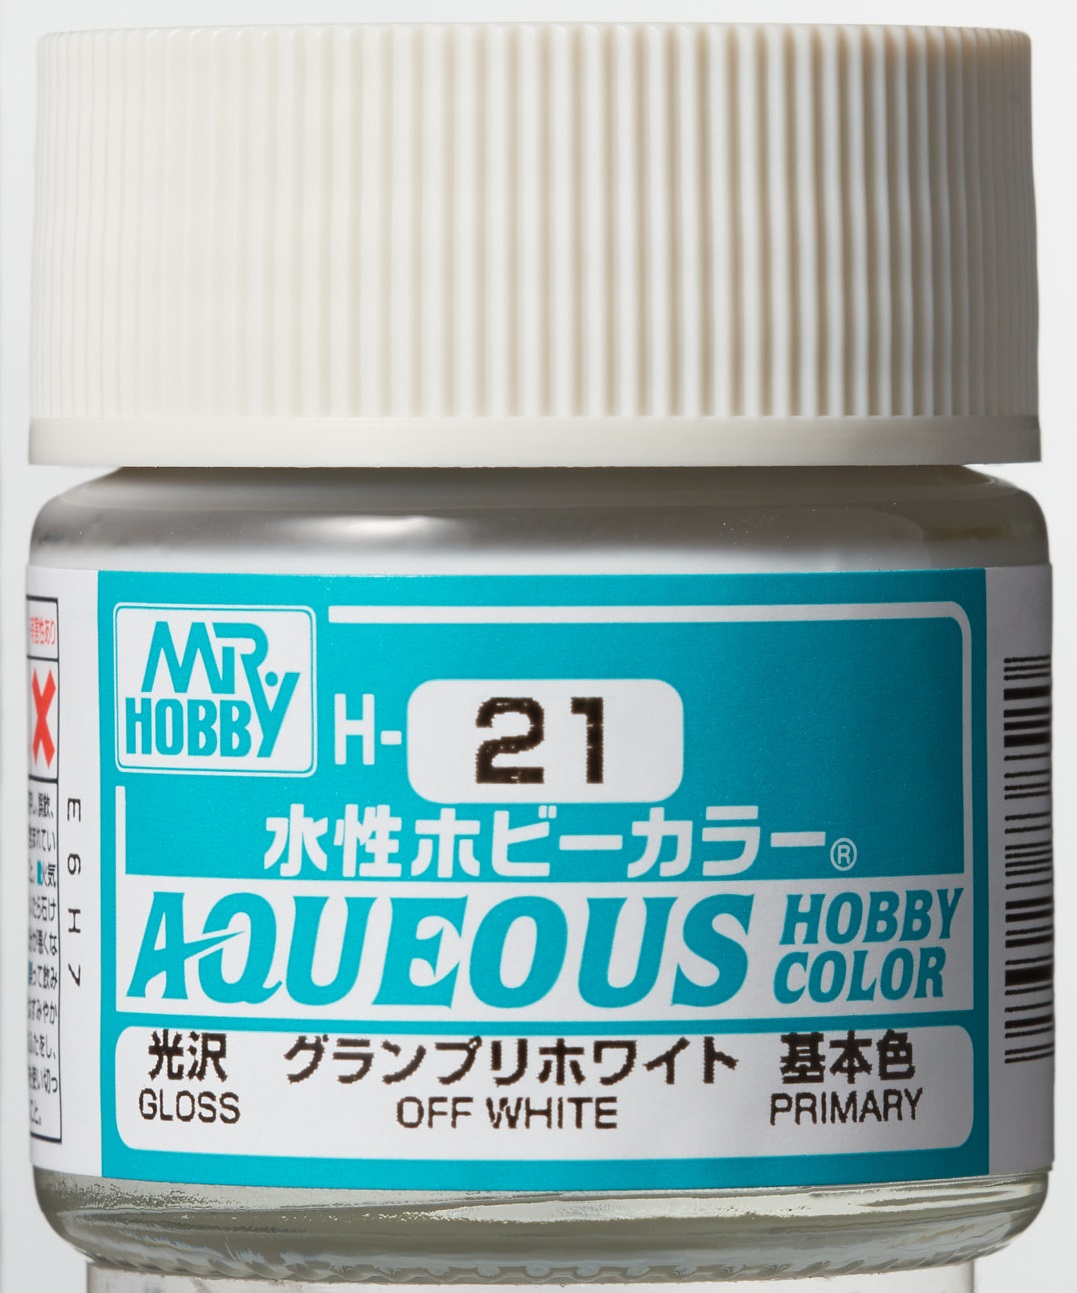 Mr. Aqueous Hobby Color - Off White - H21 - Creme